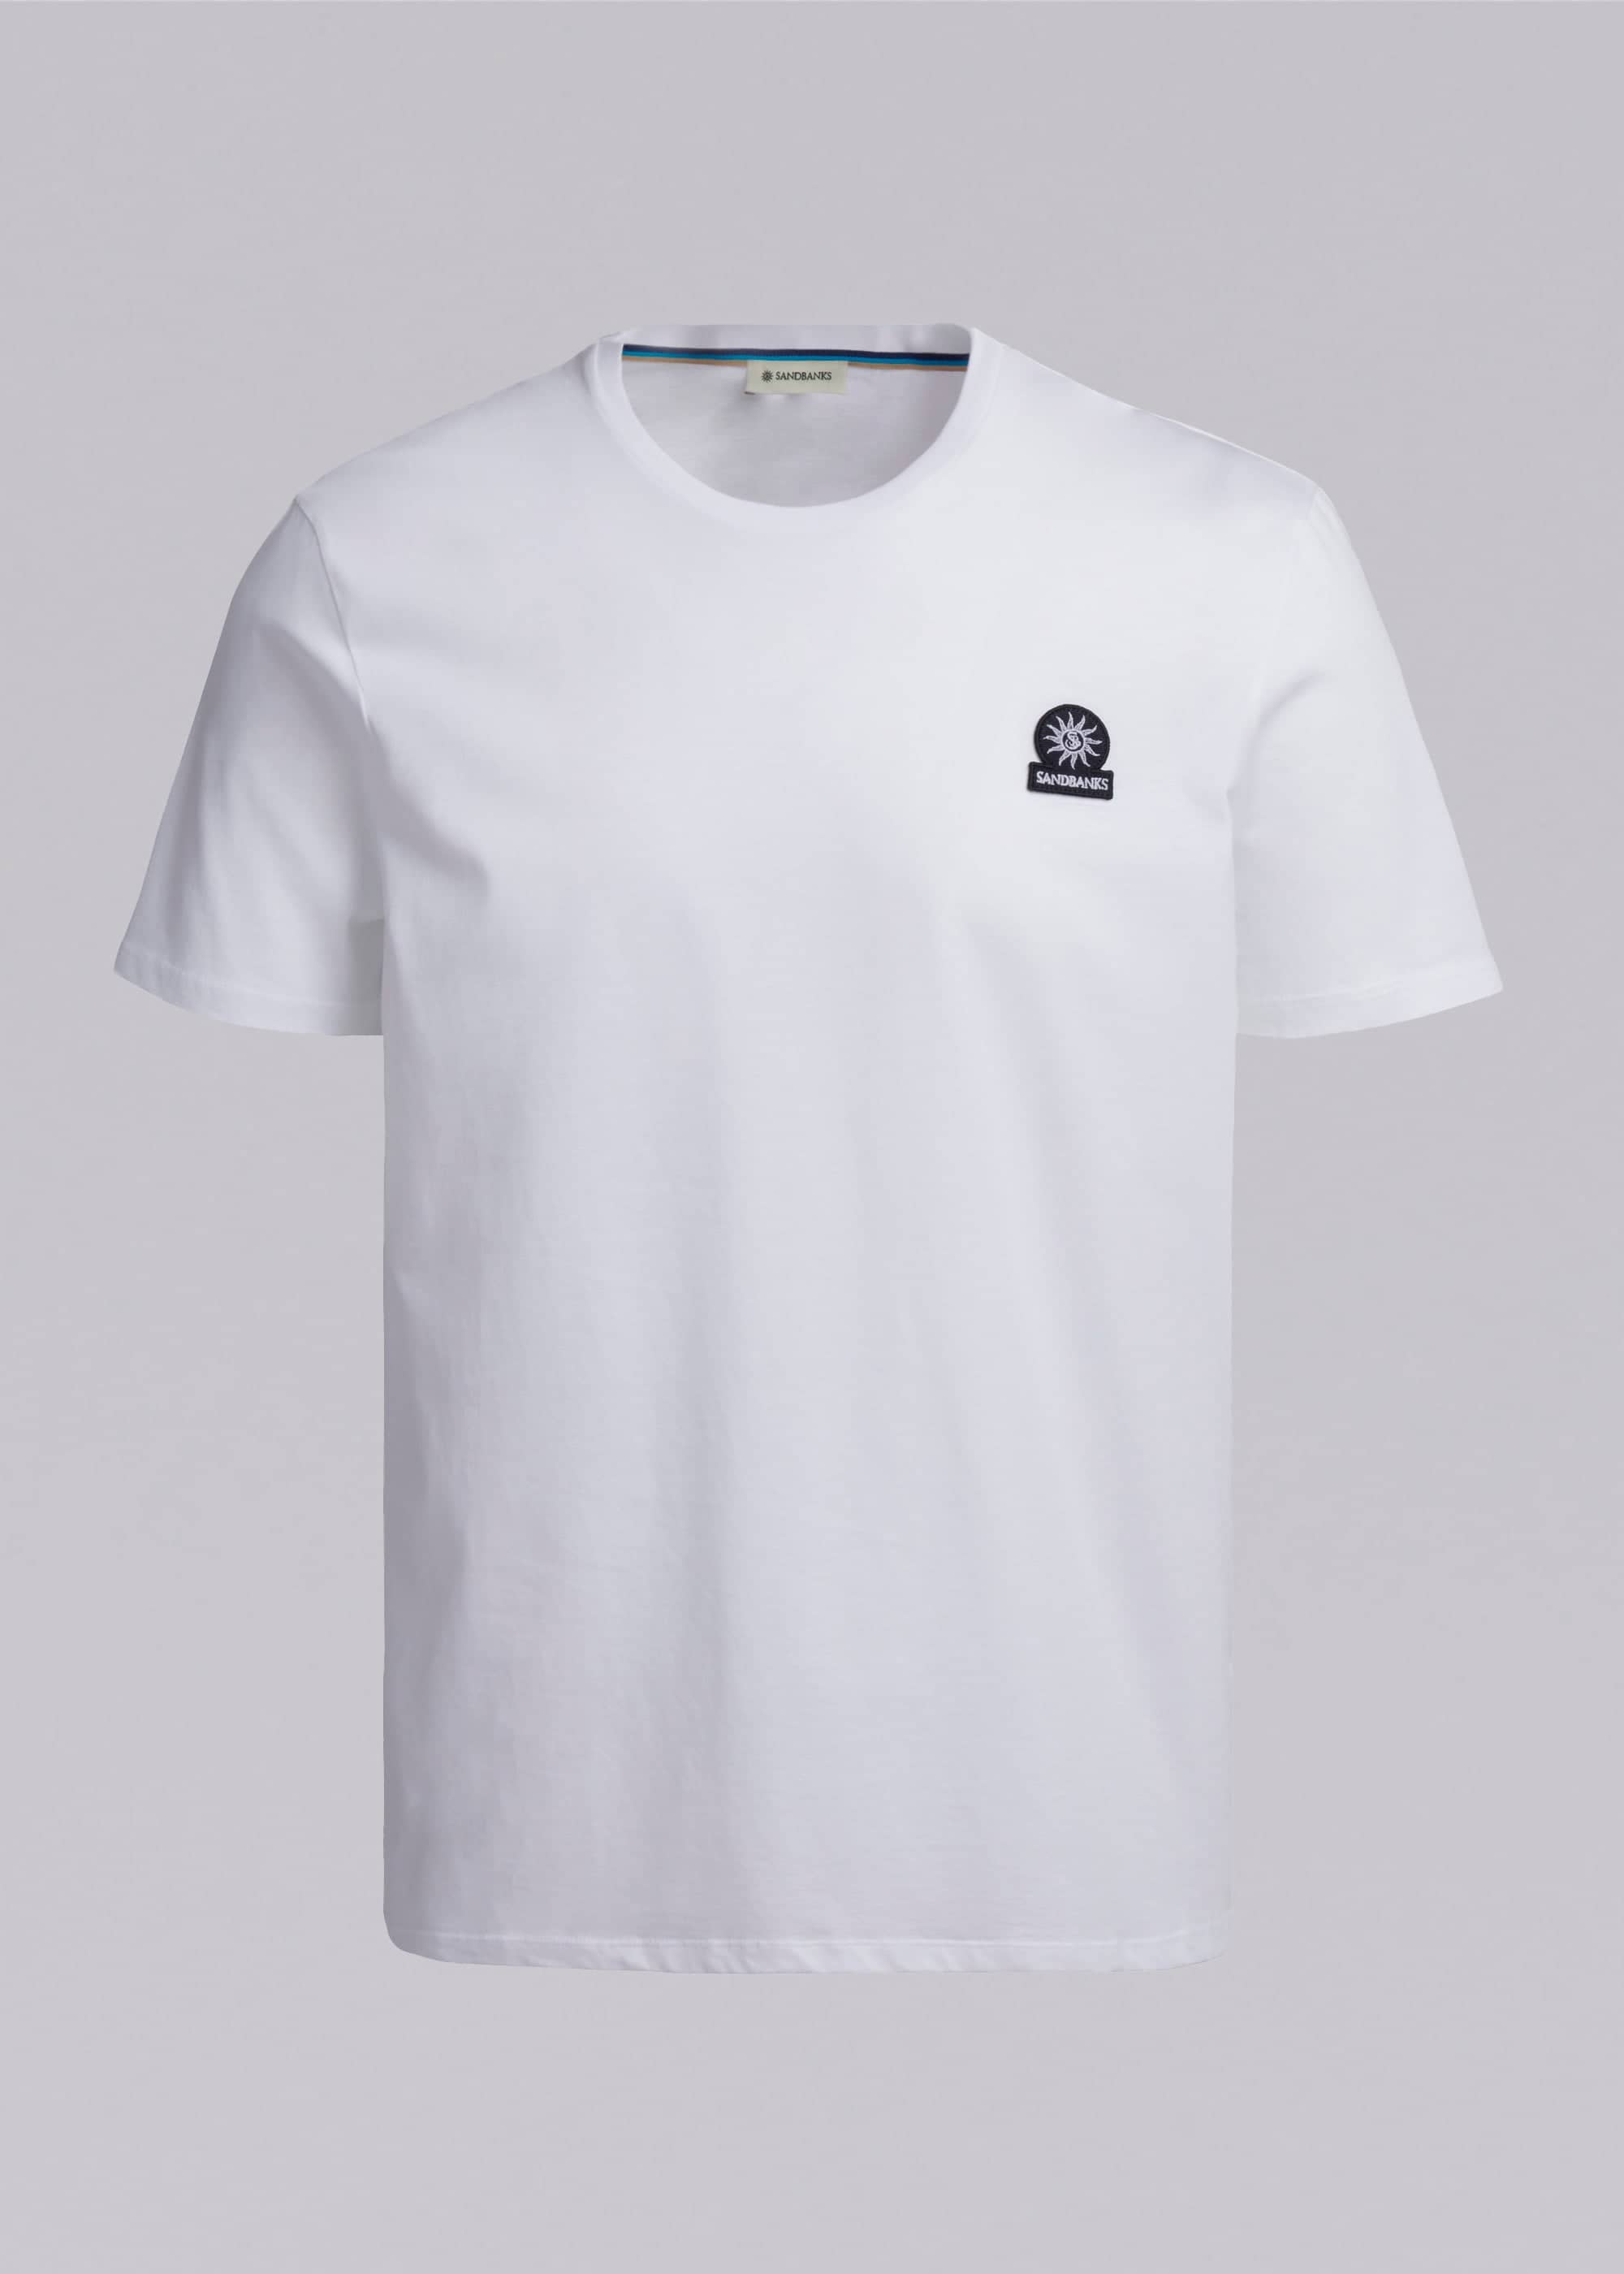 Sandbanks Badge Logo T-Shirt - White - Sandbanks